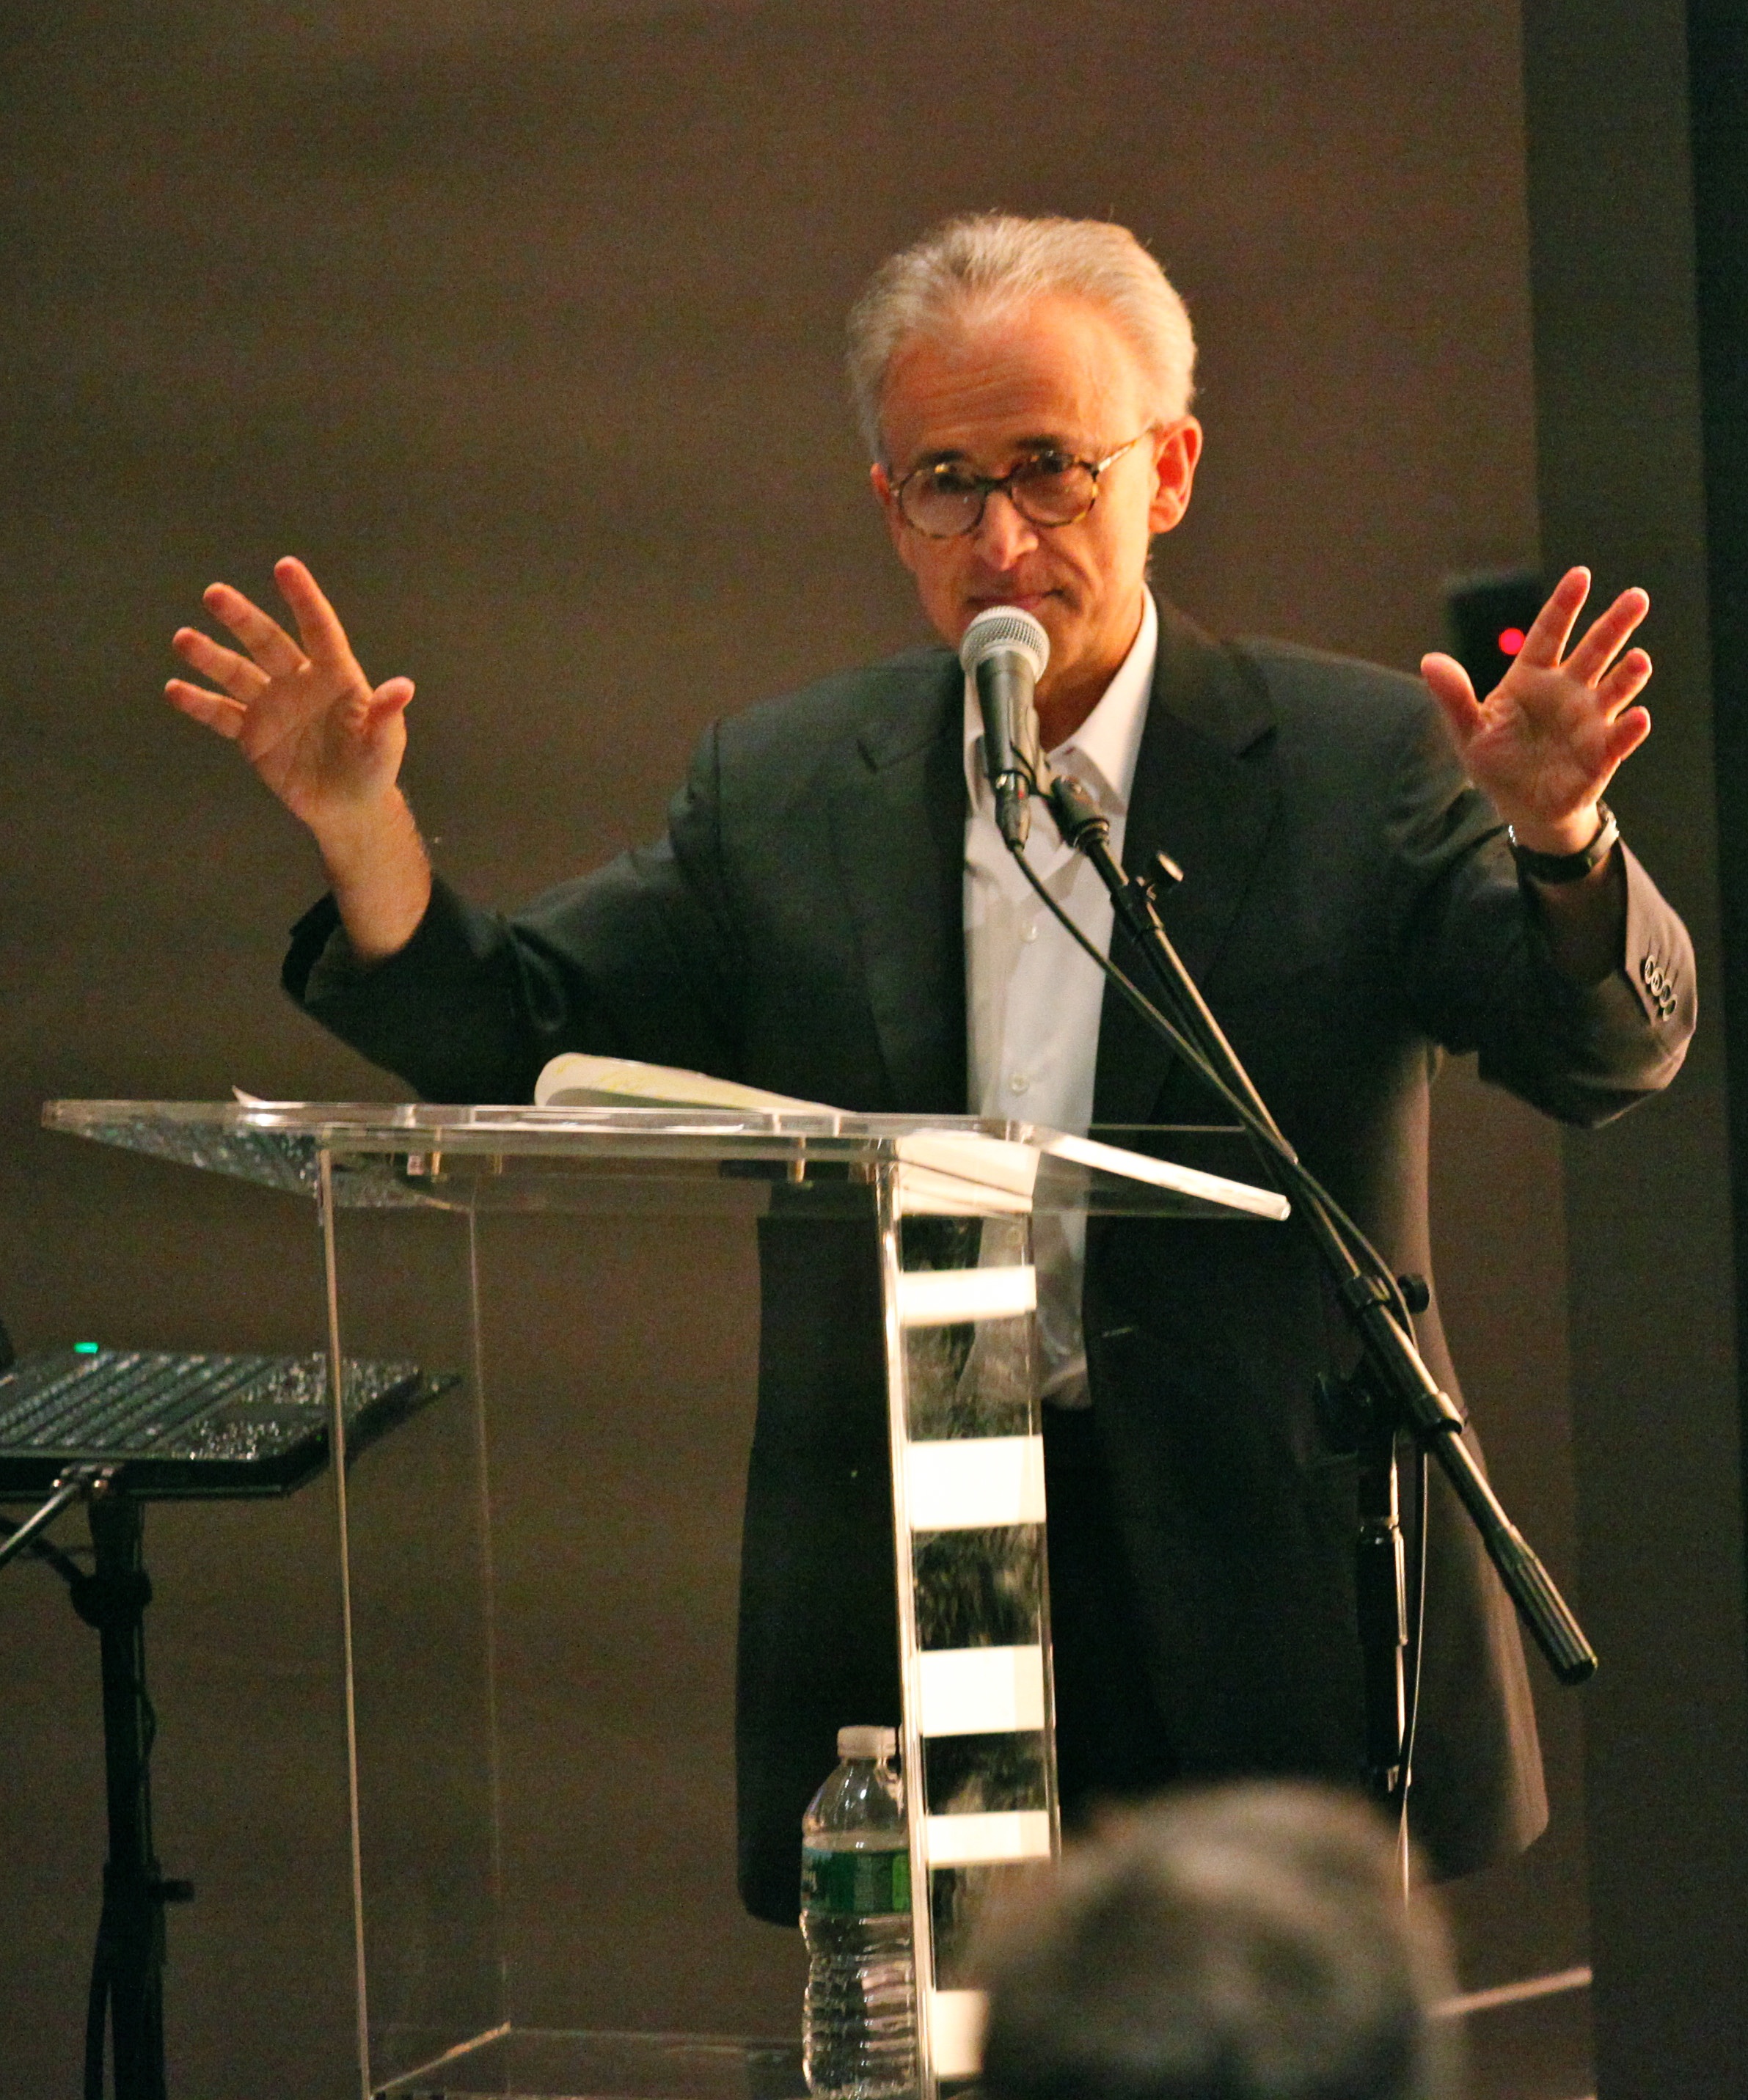 Antonio Damasio, Speaker